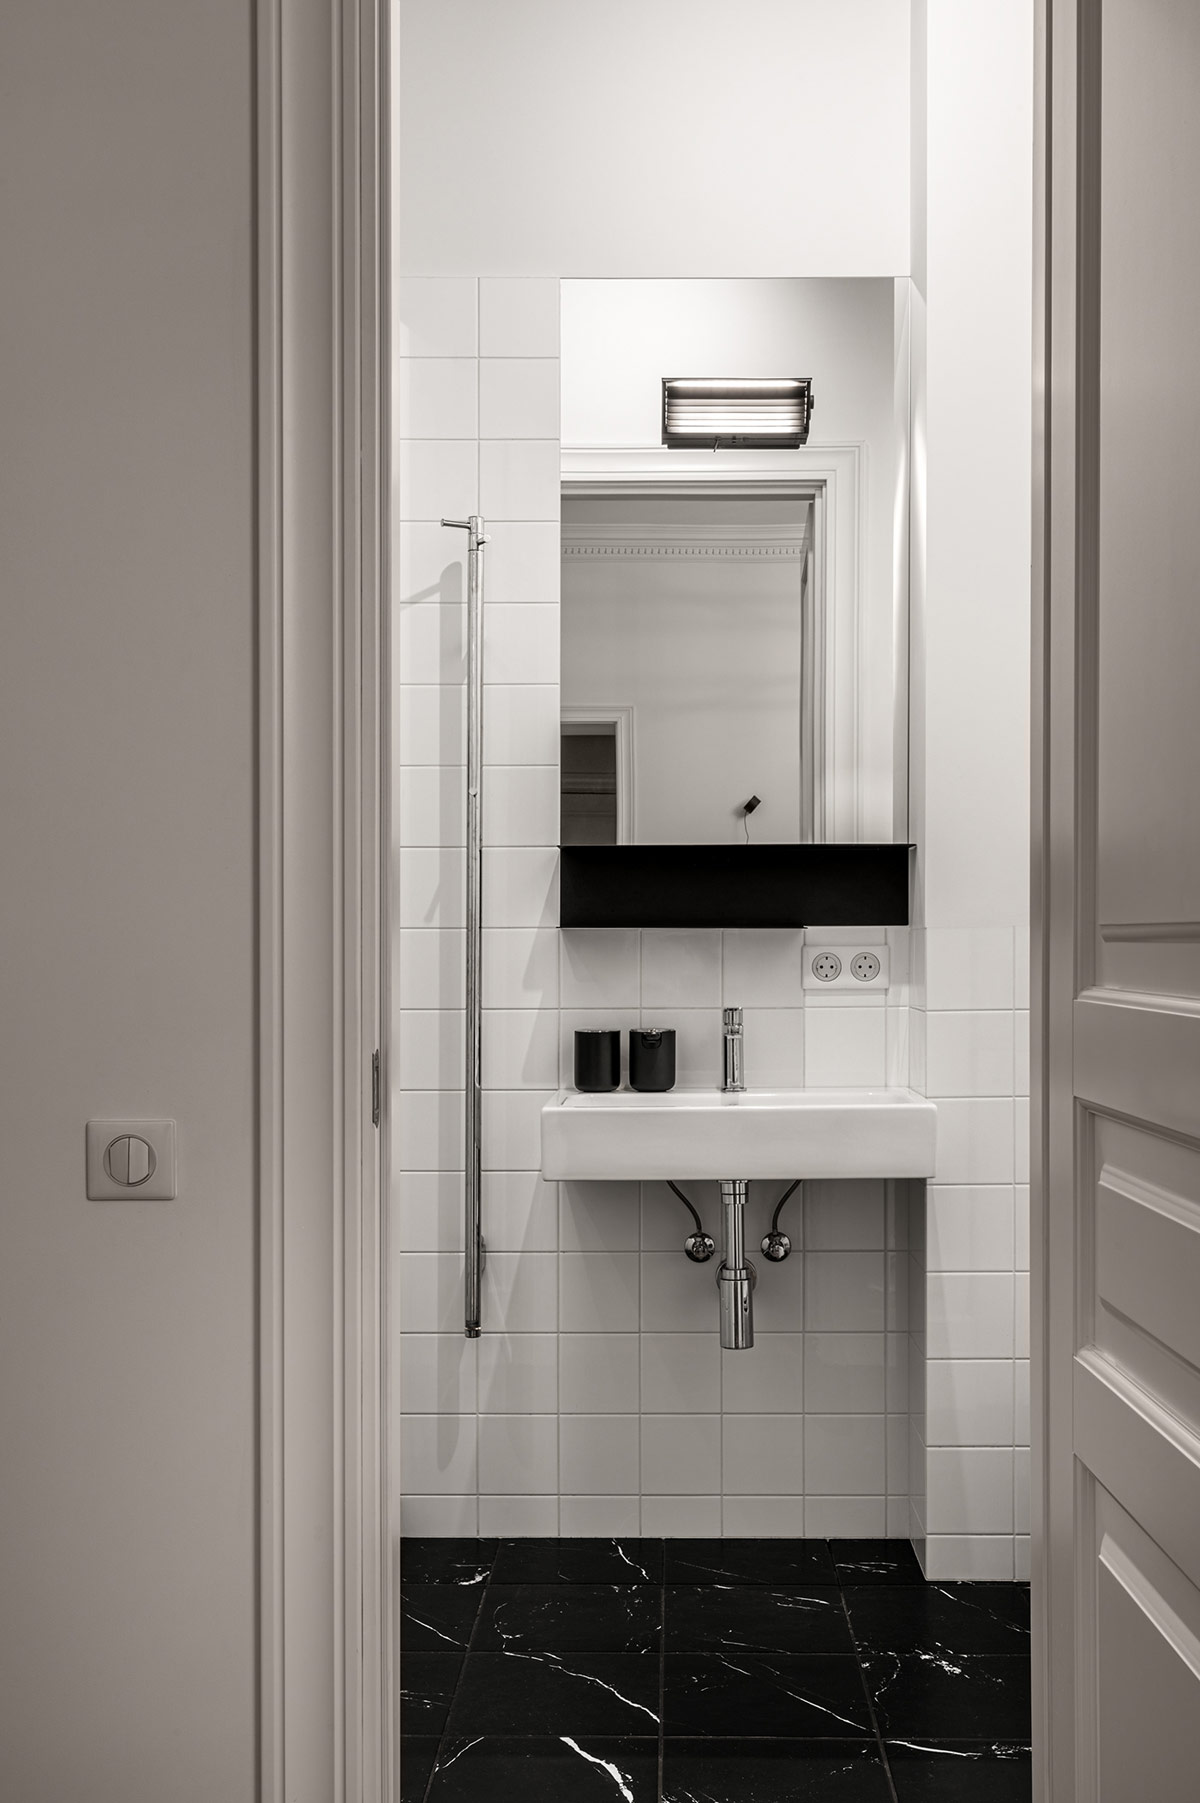 Bồn rửa treo tường giúp giải phóng không gian mặt sàn phòng tắm, tạo độ thông thoáng nhất định cho căn phòng.